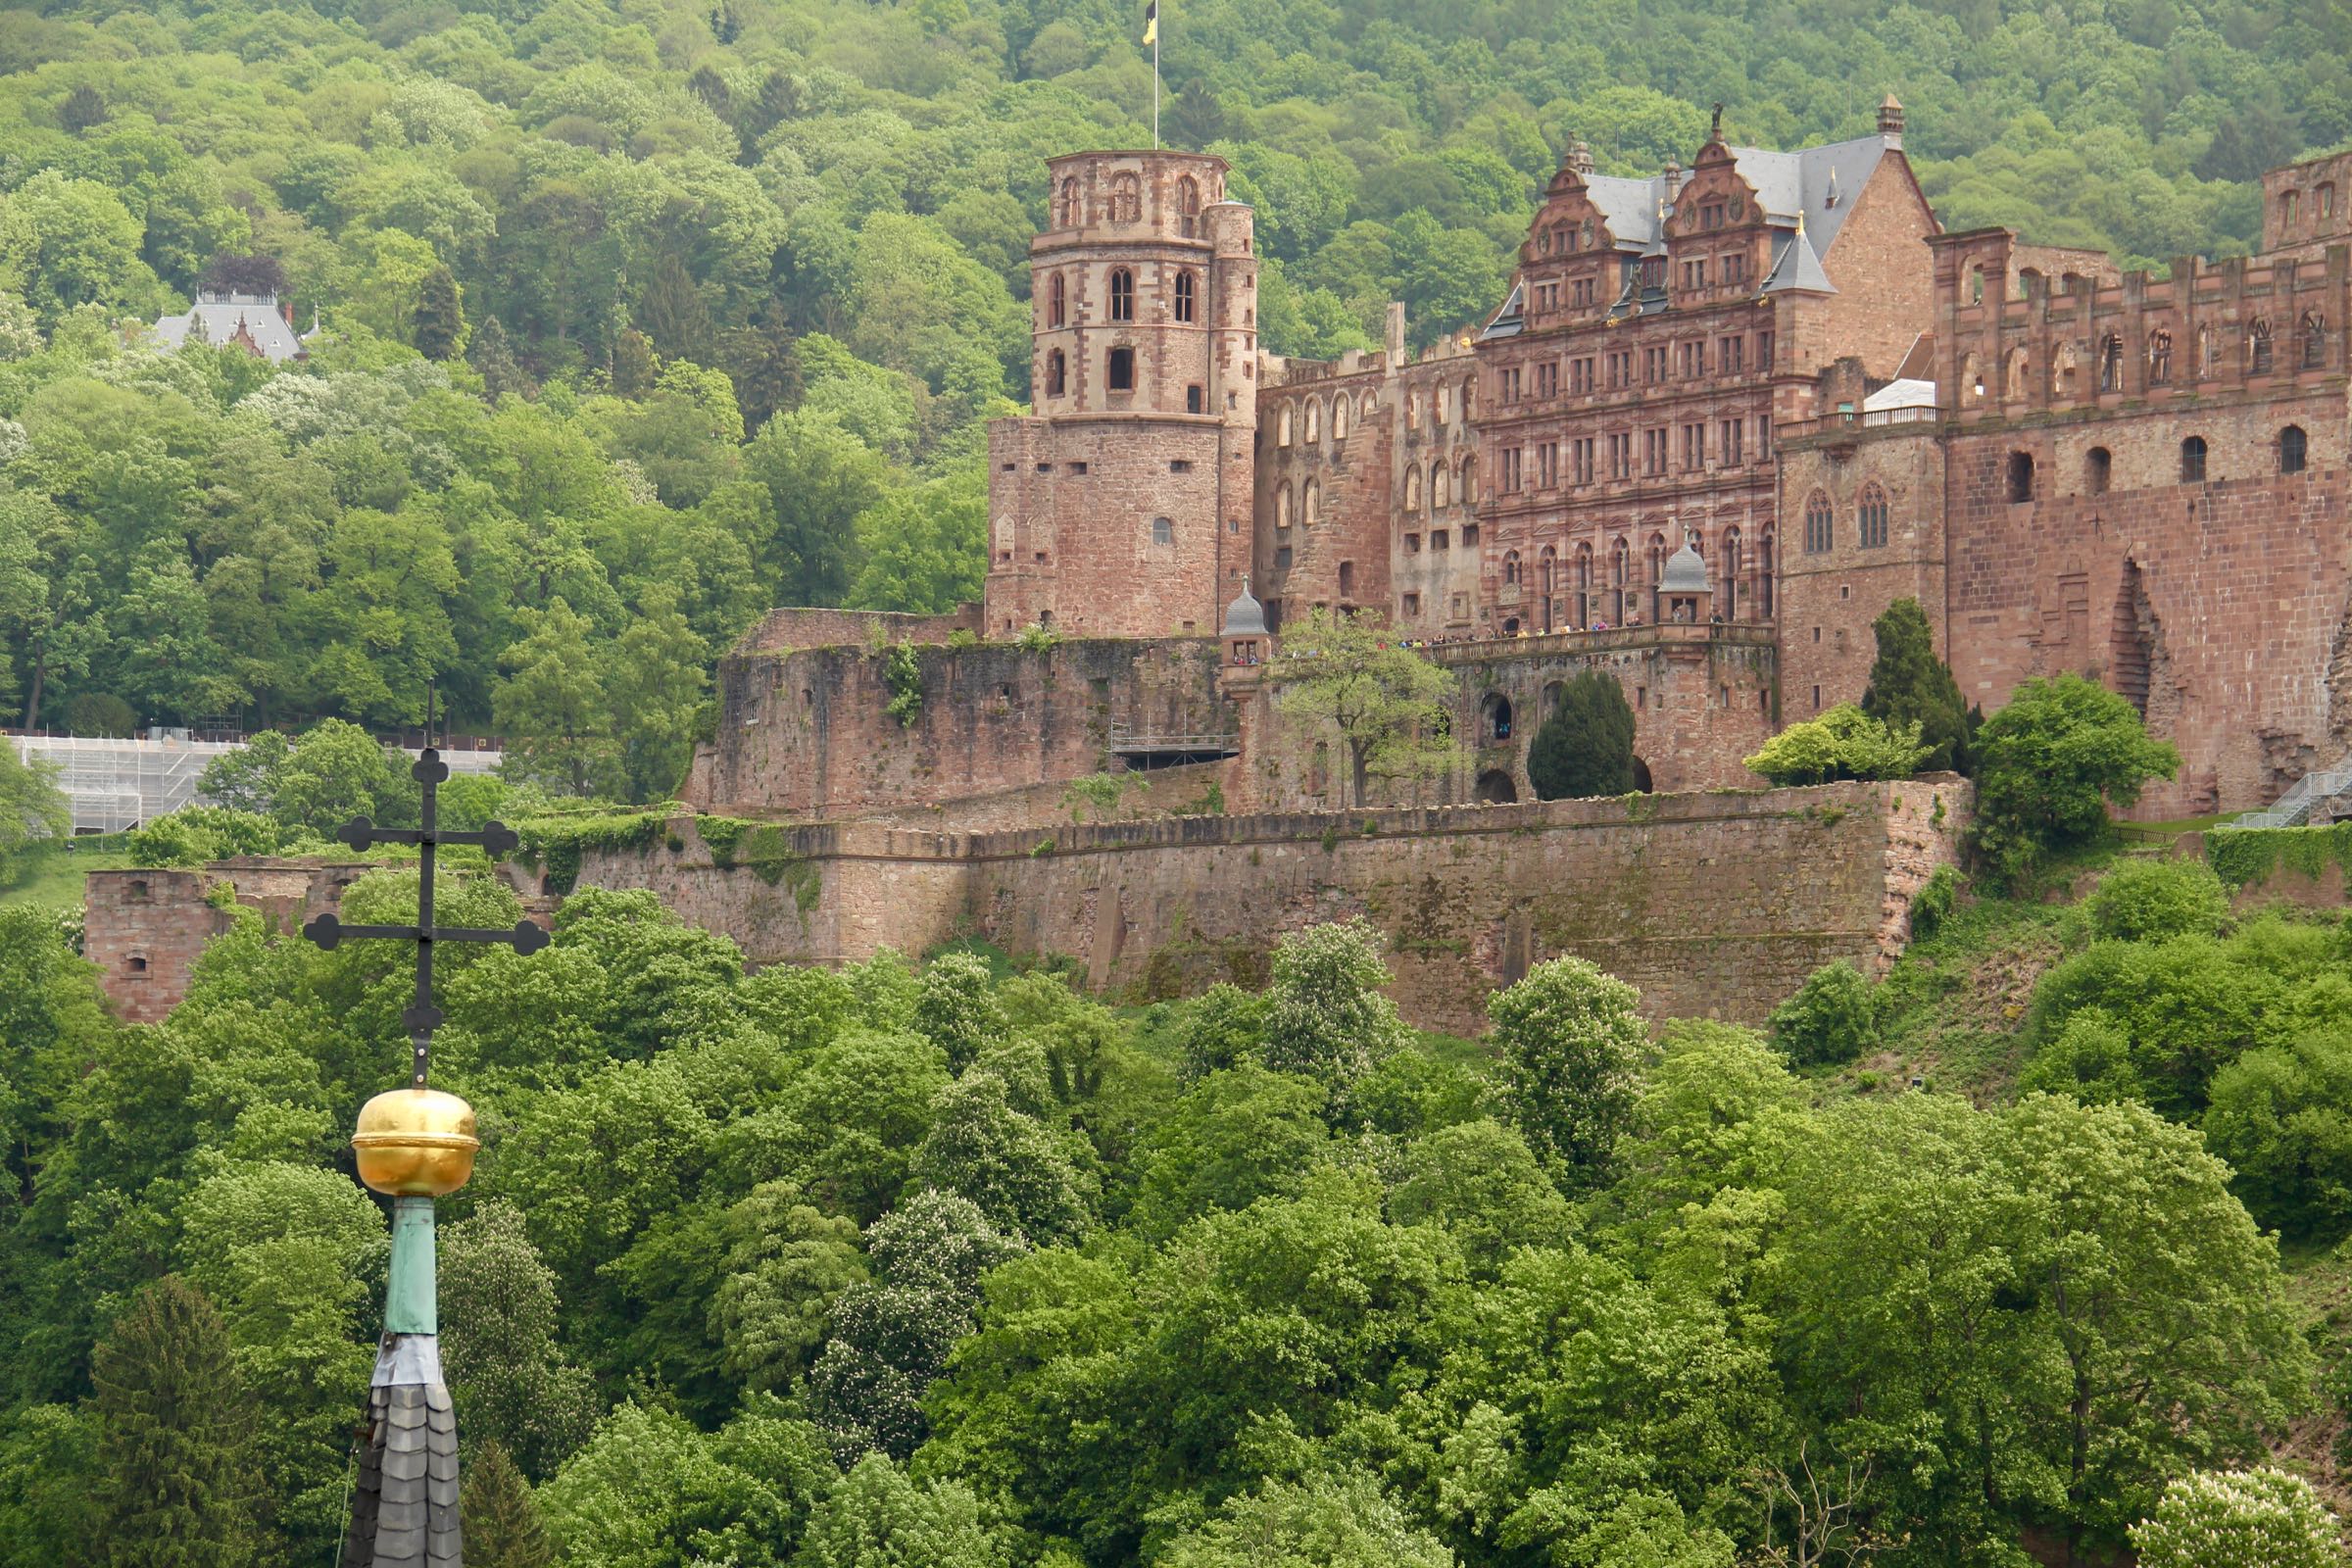 Blick auf das Heidelberger Schloss, Heidelberg, Deutschland